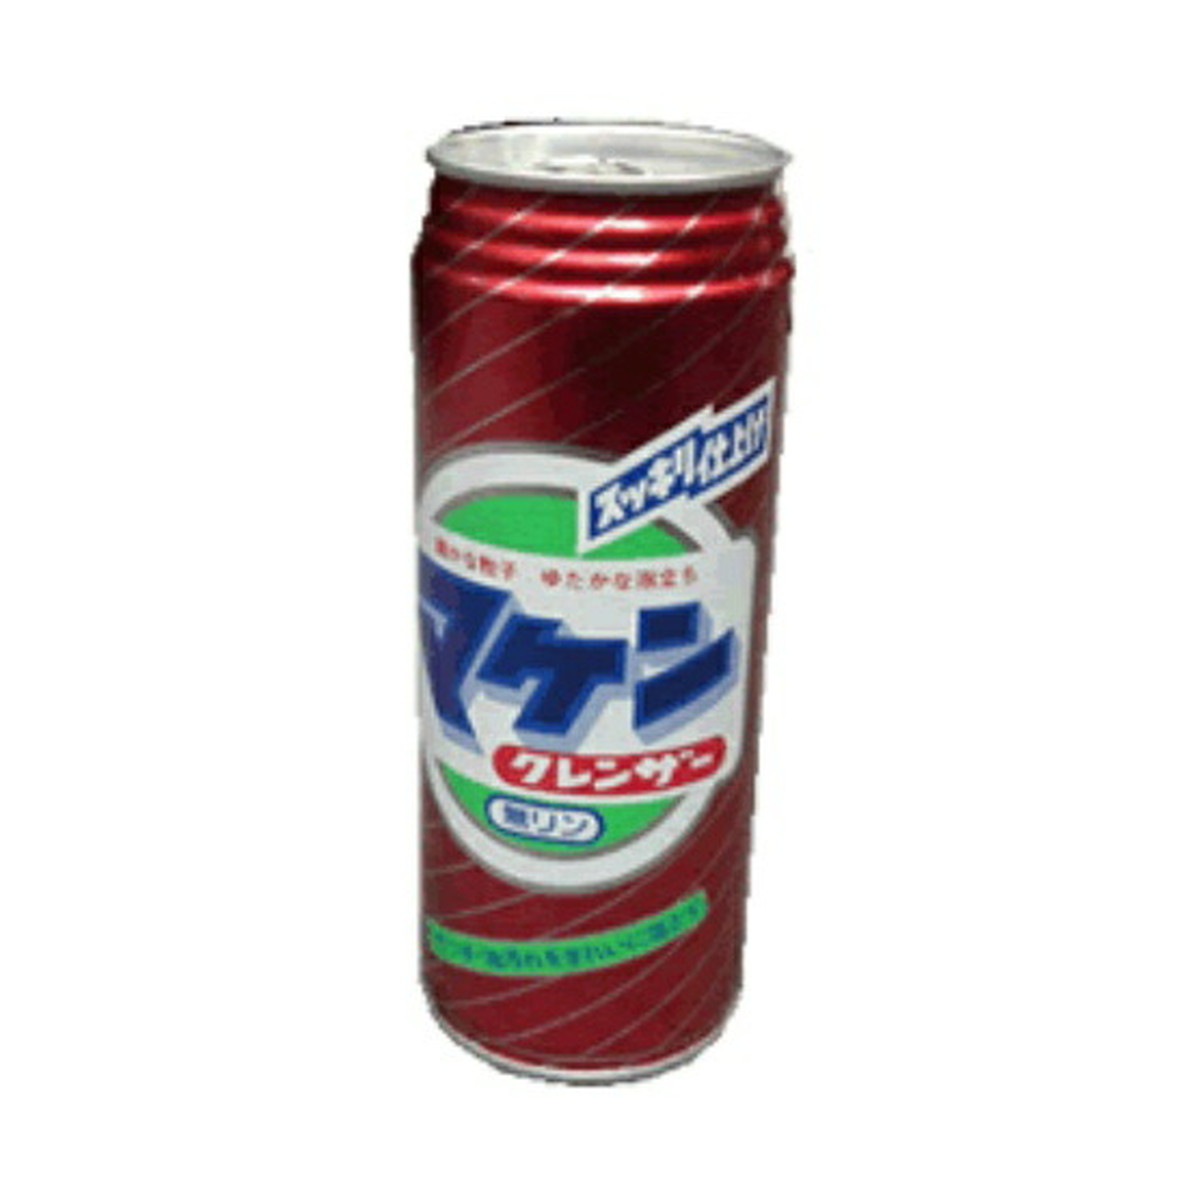 マケン石鹸 マケン クレンザー 350g(4